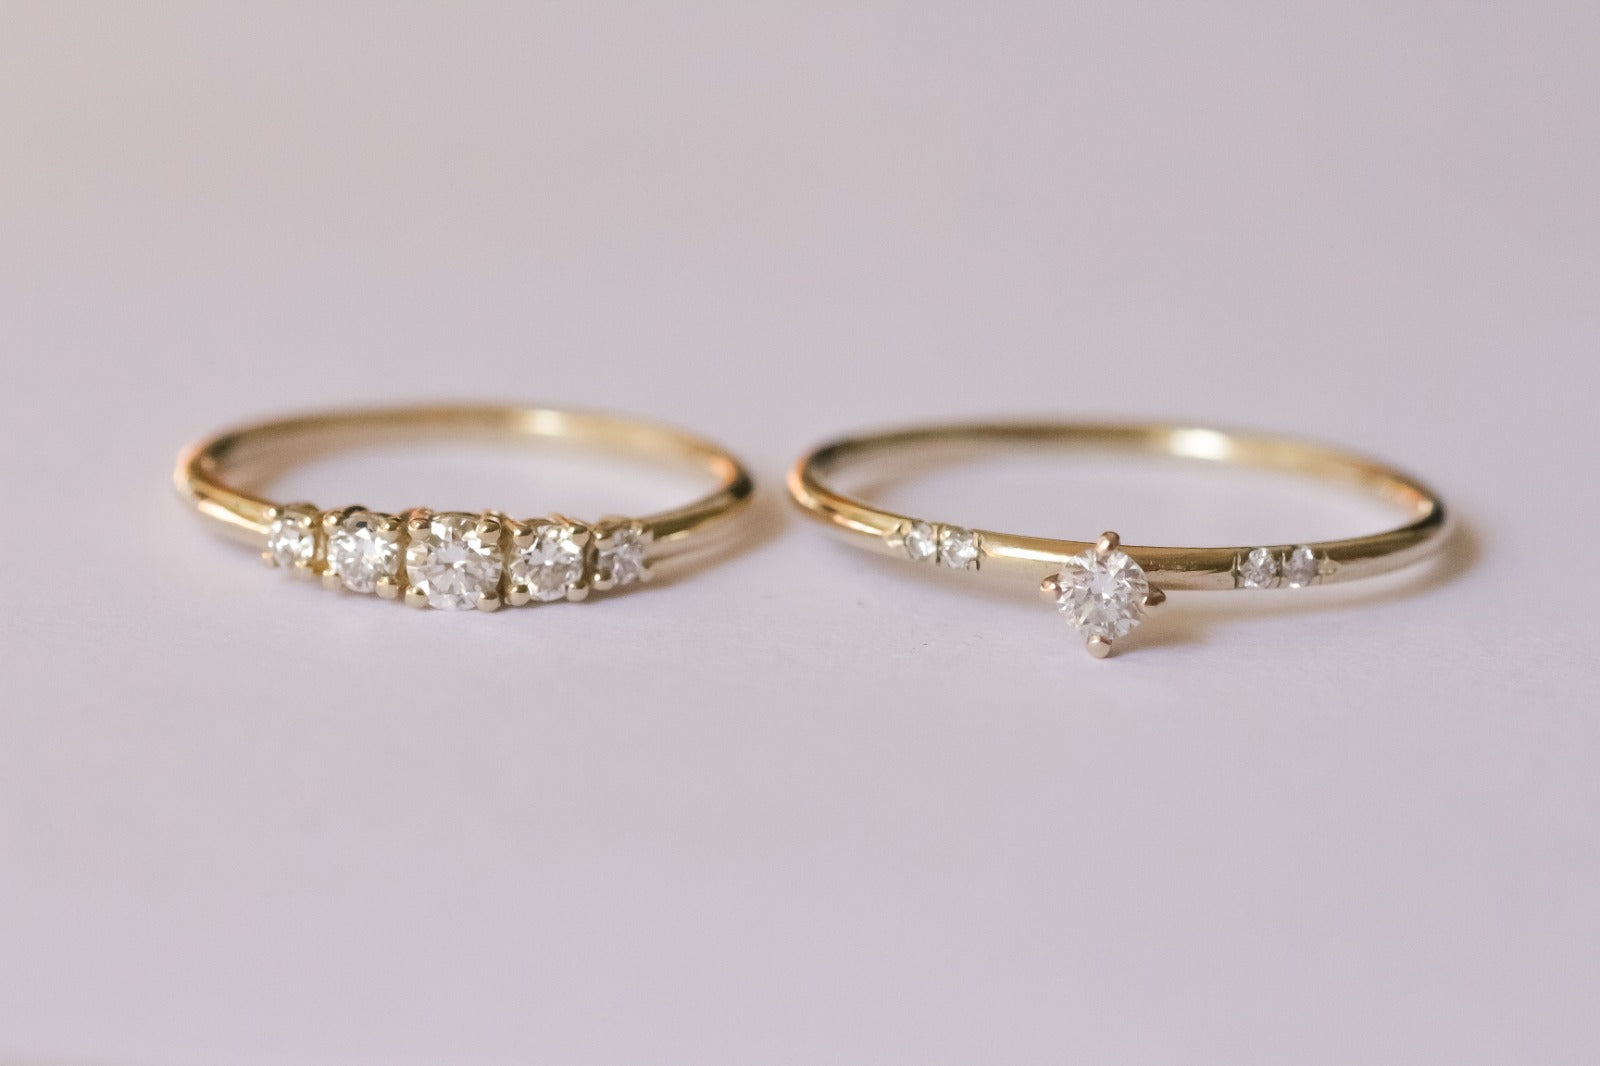 Tiny Duo Ring | Dainty gold jewelry, Minimal jewelry, Simple jewelry